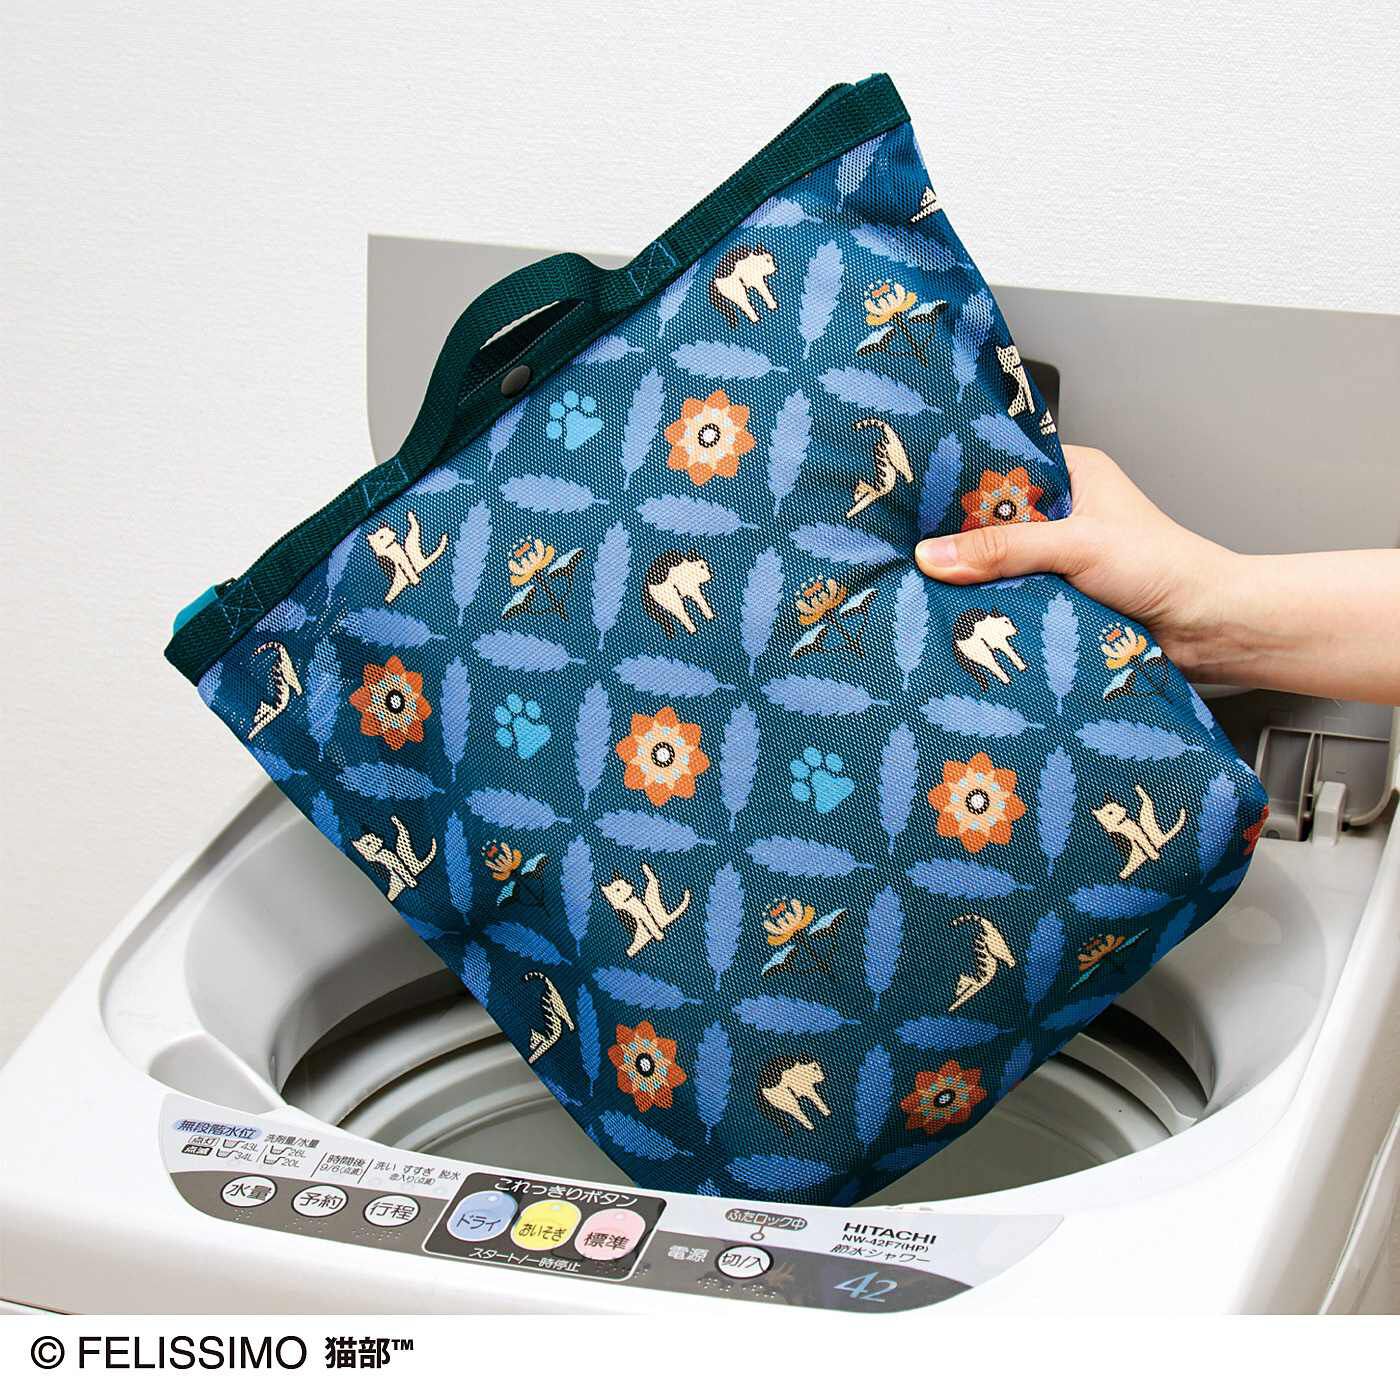 猫部|ヨガポーズ猫のエスニック気分な洗濯メッシュバッグの会|ショルダーをバッグの中に入れると洗濯ネットに。